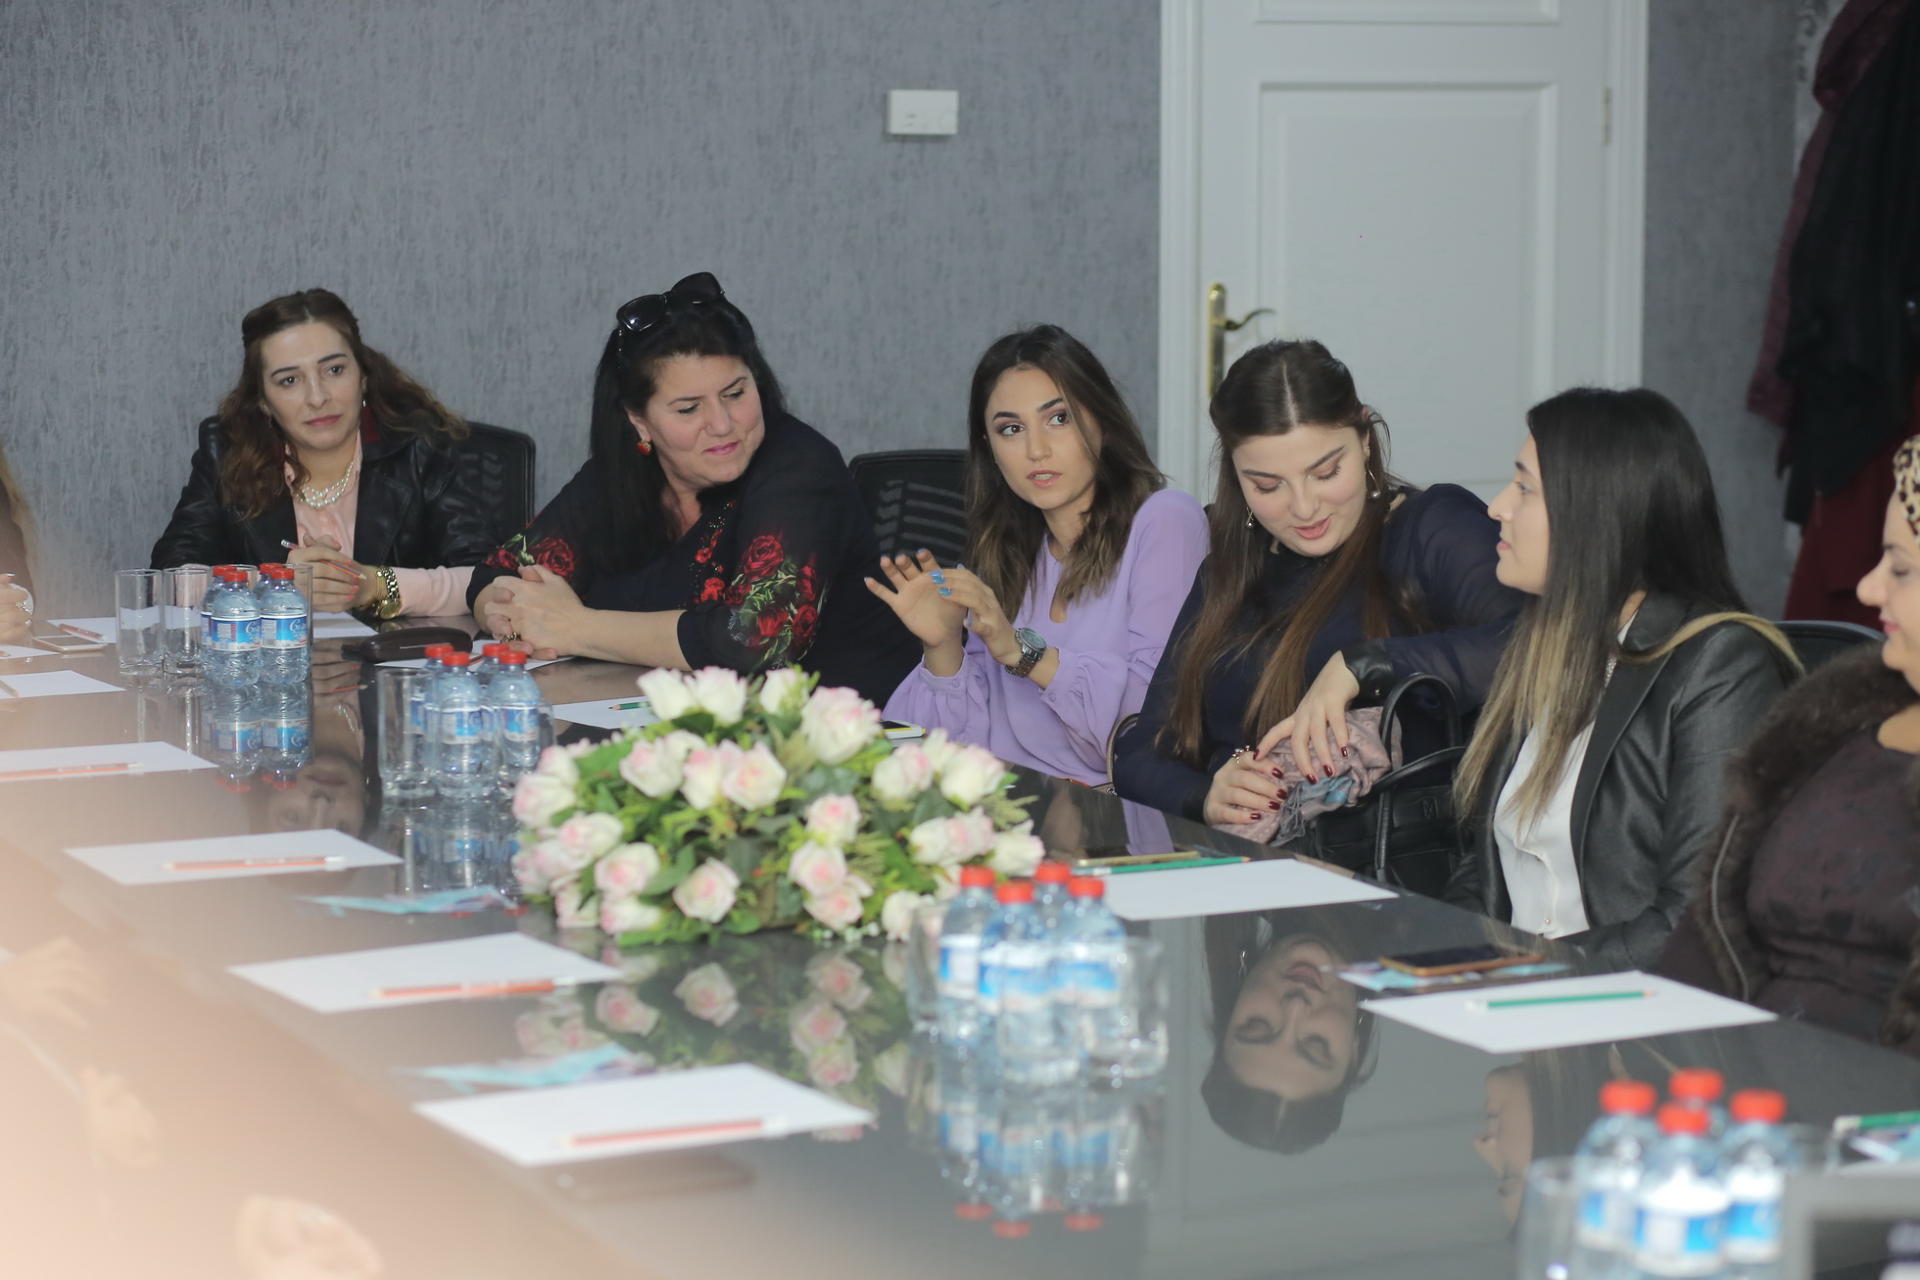 Bank Respublika провел тренинг для женщин-предпринимателей (ФОТО)